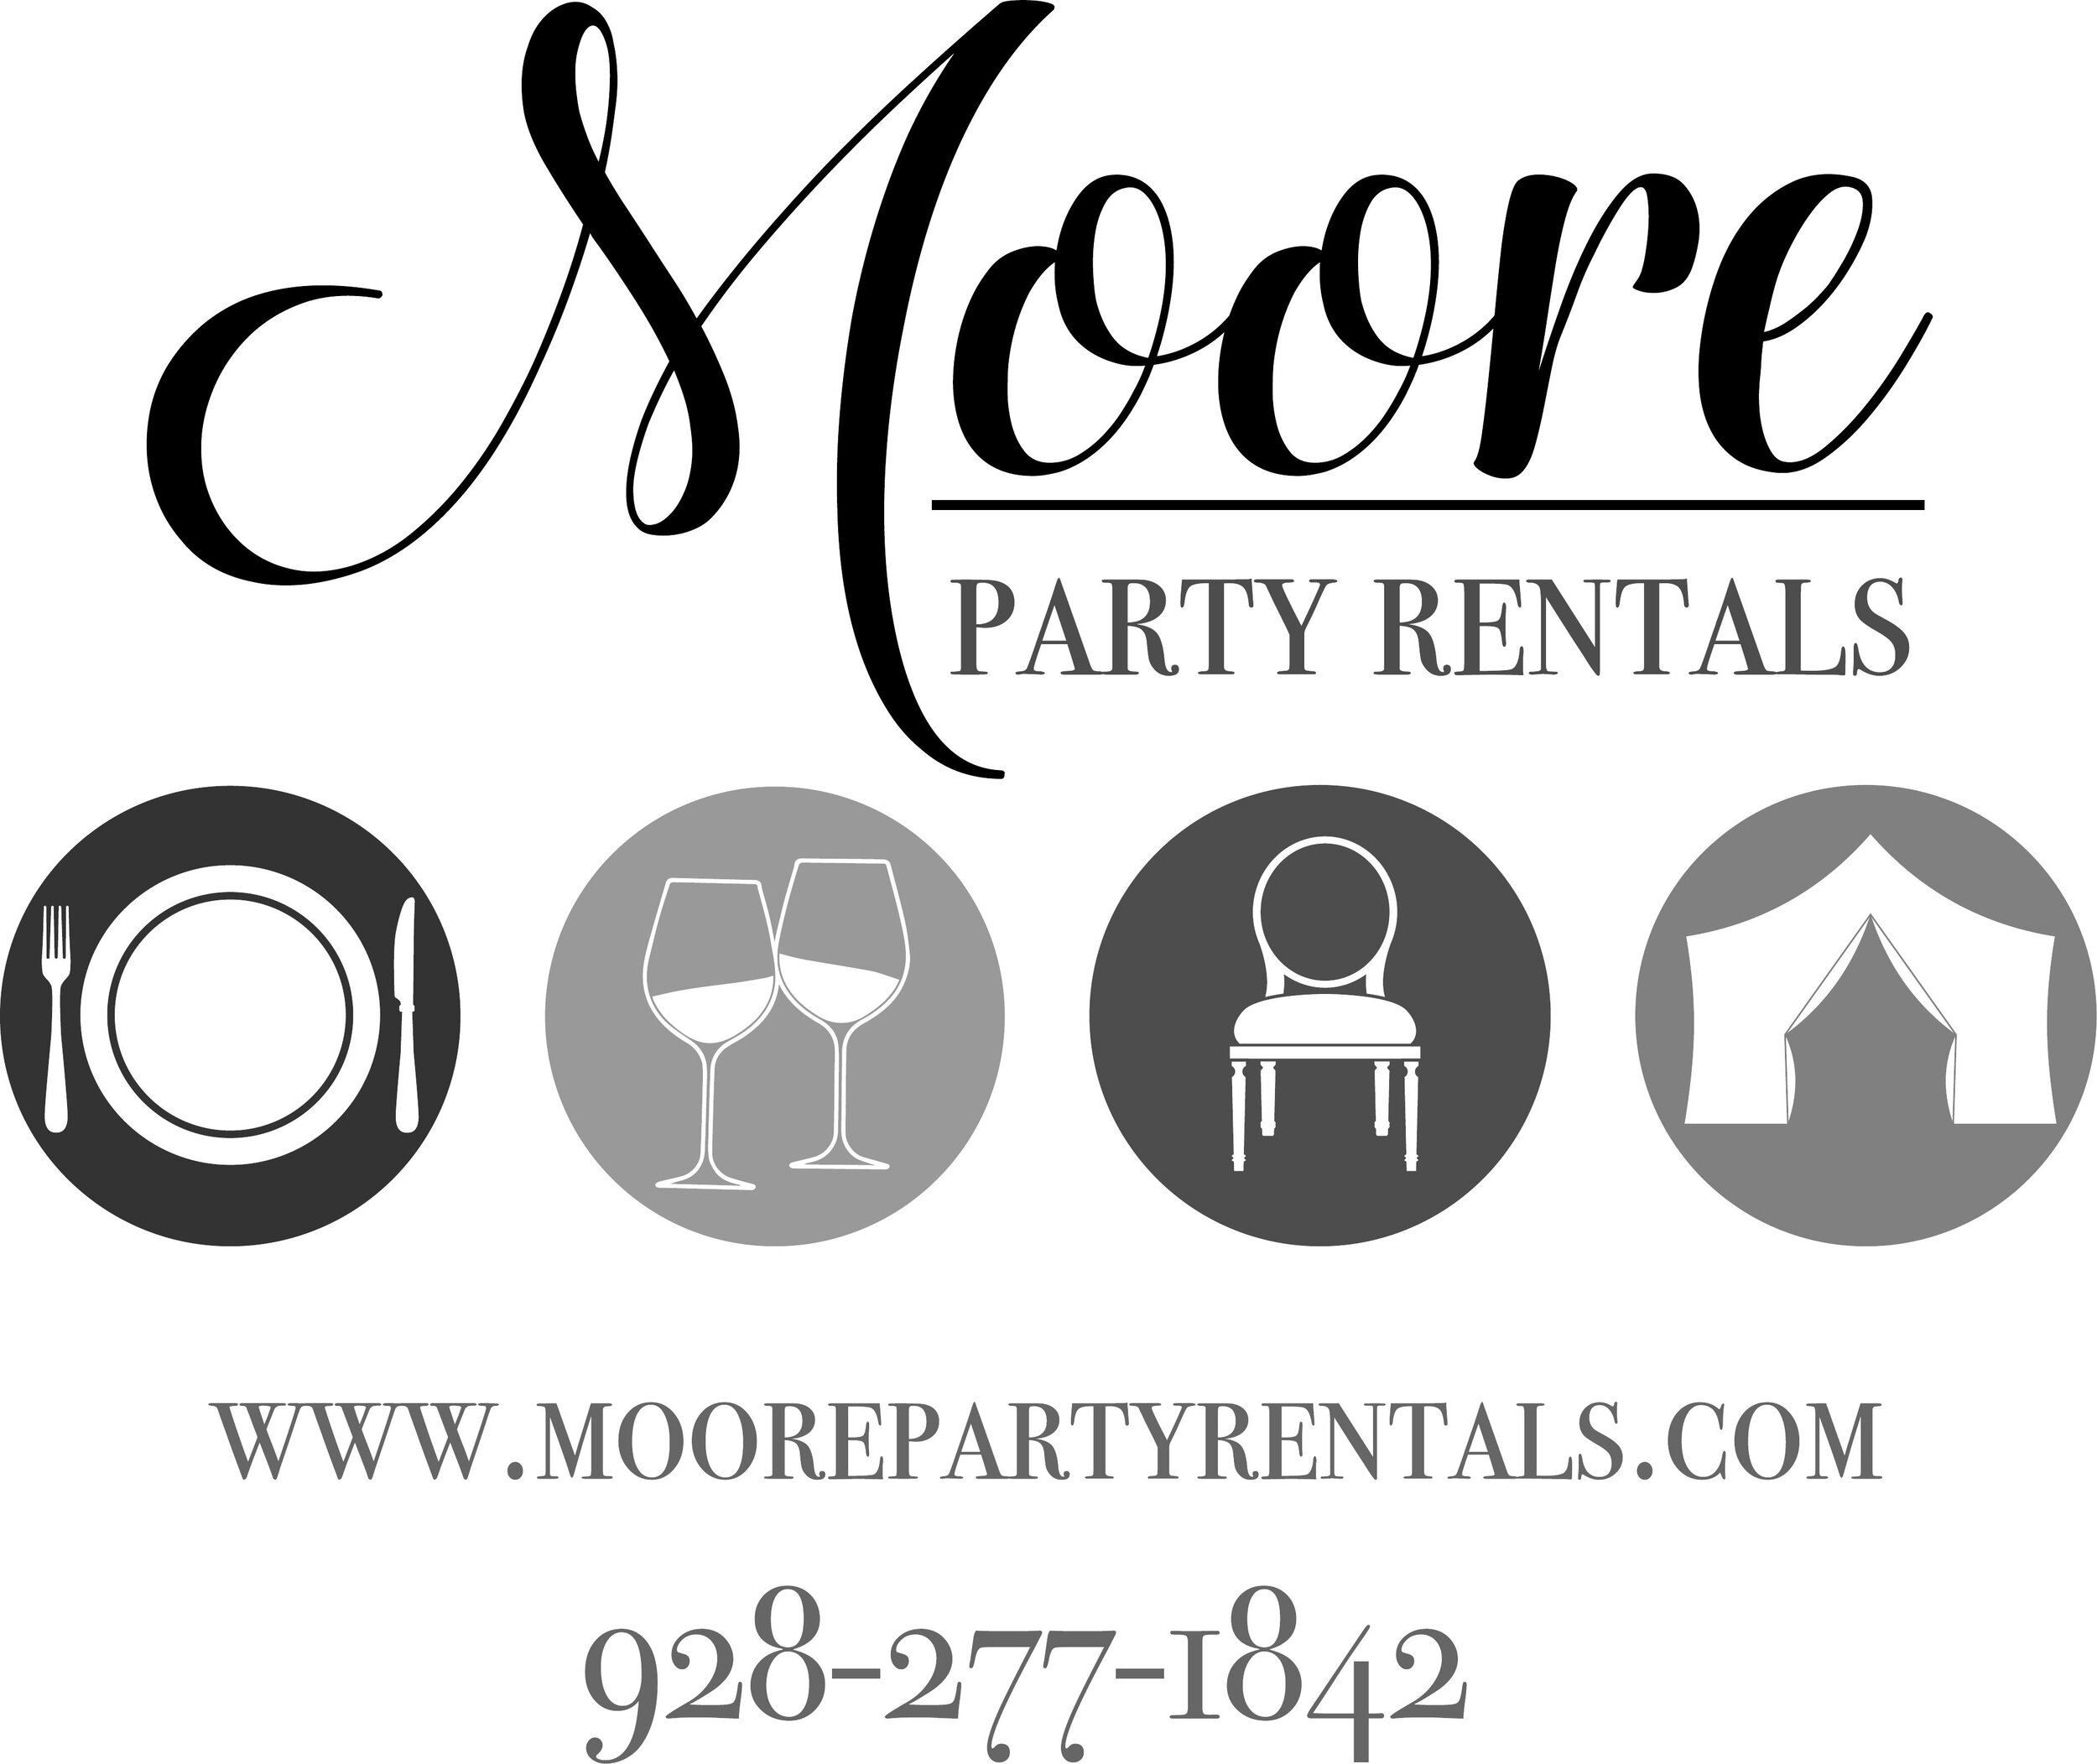 Moore Party Rentals Logo.jpg